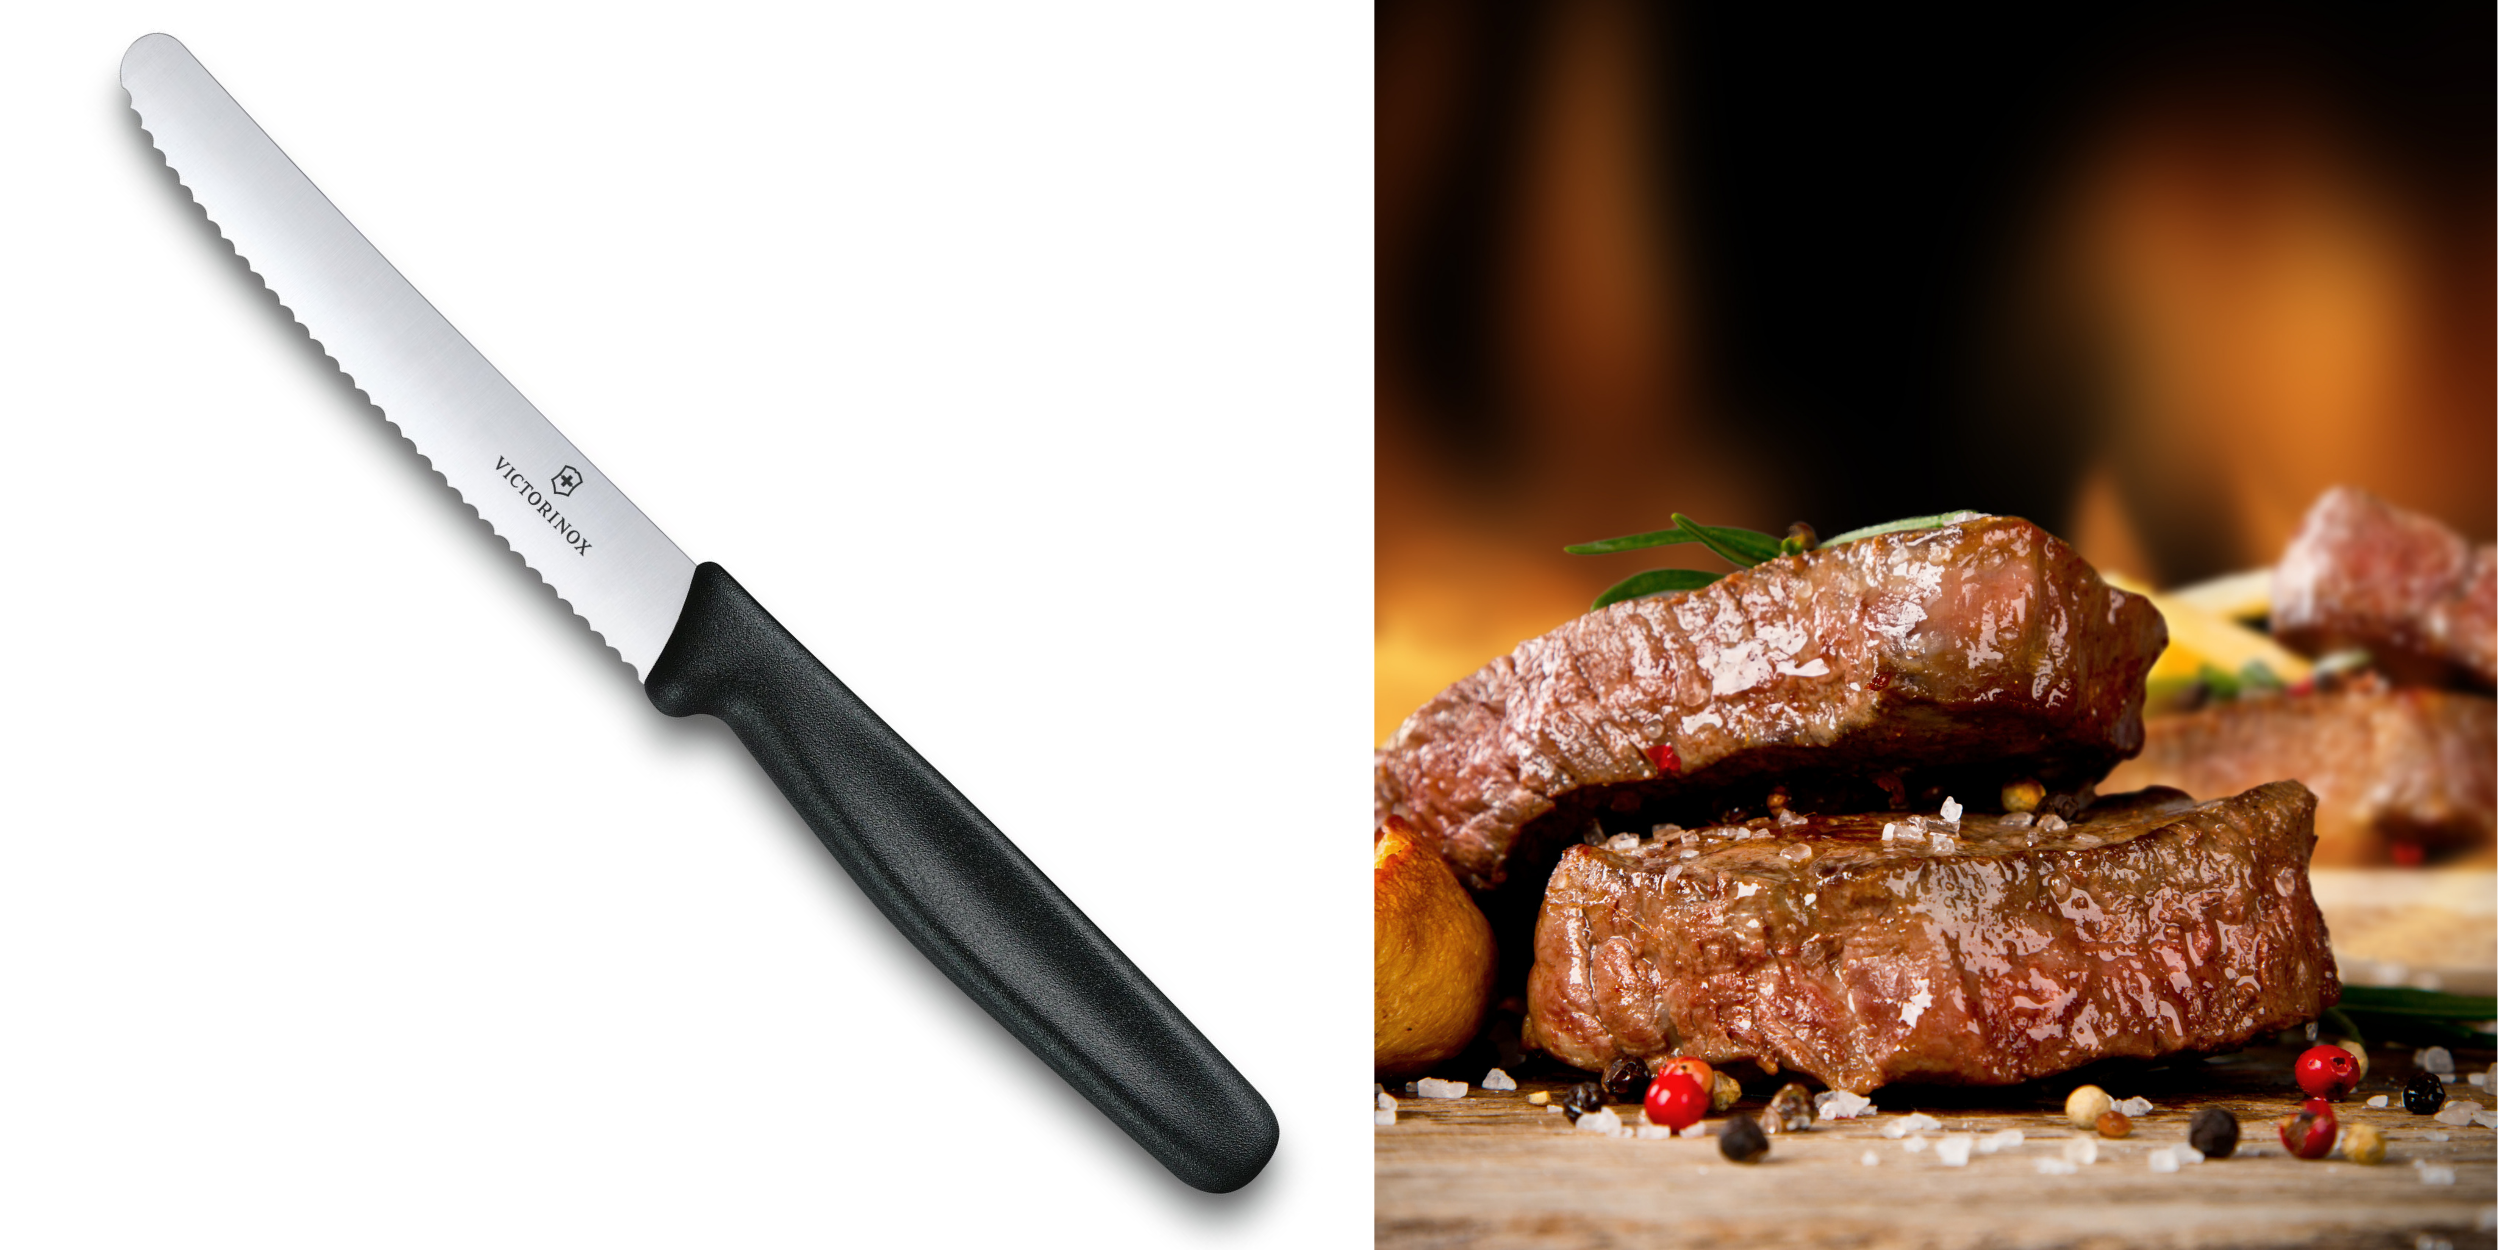 Couteau à steak de 4,5" avec bord dentelé et photo de deux steaks cuits